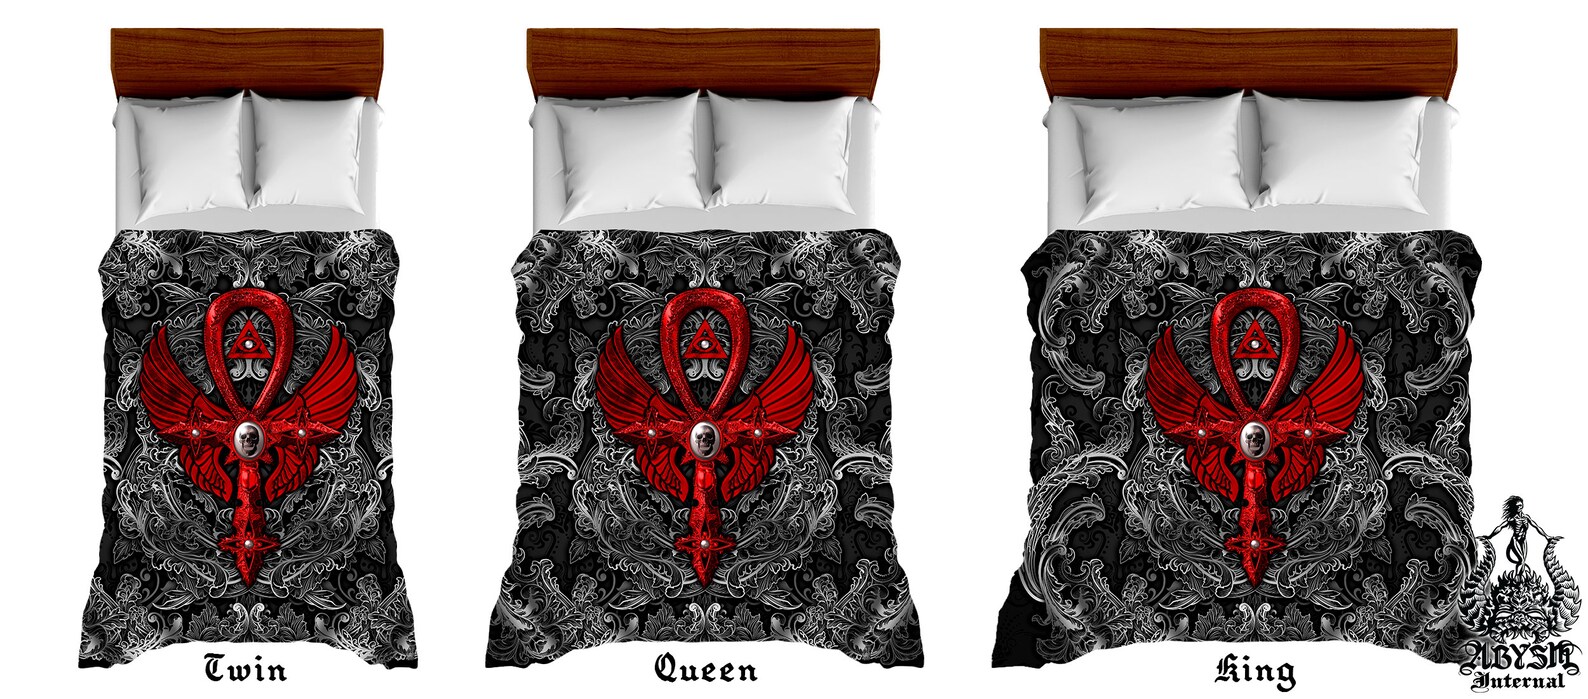 Gothic Bedding Set Duvet Cover Comforter or Pillow Shams: | Etsy